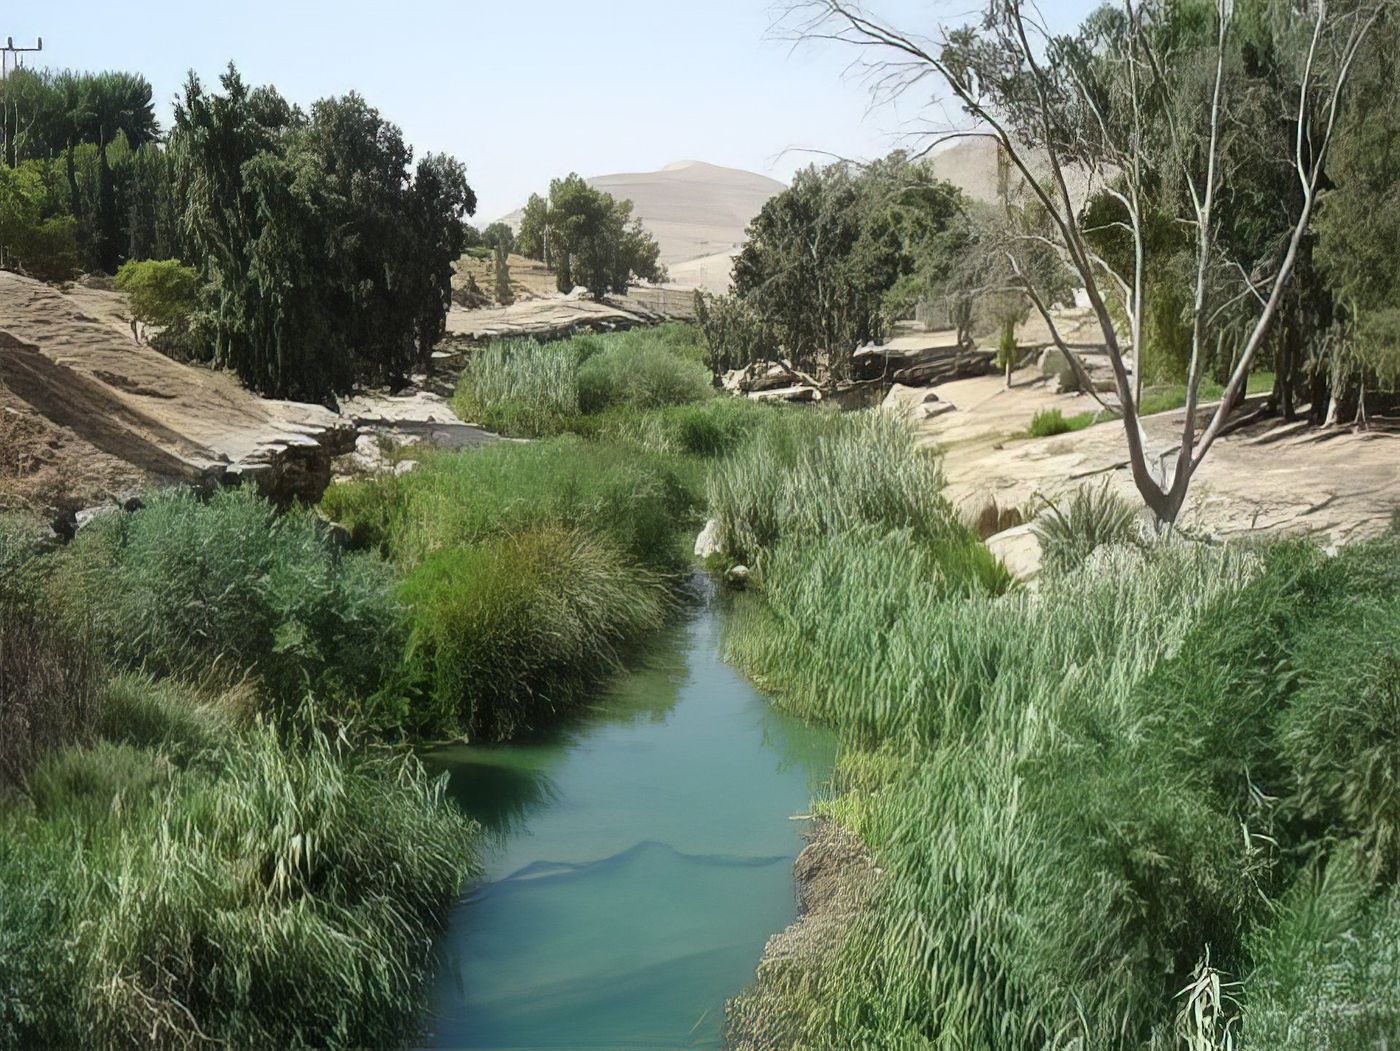 Wadi Al-Hidan